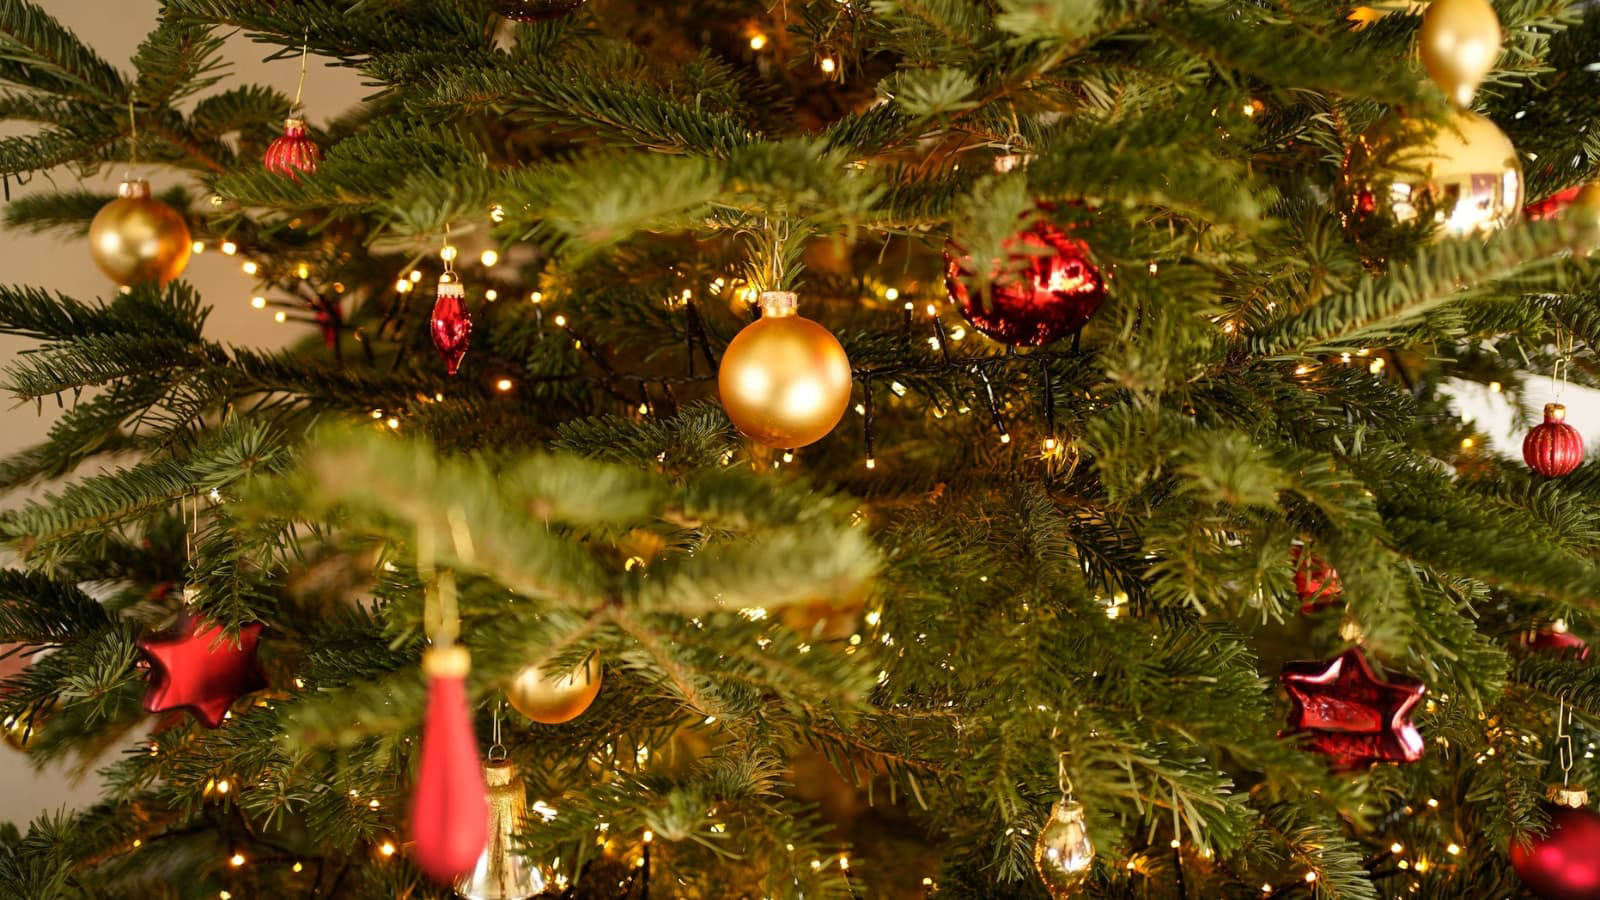 Noël passé, voici comment jeter proprement son sapin en Dracénie - Var-Matin